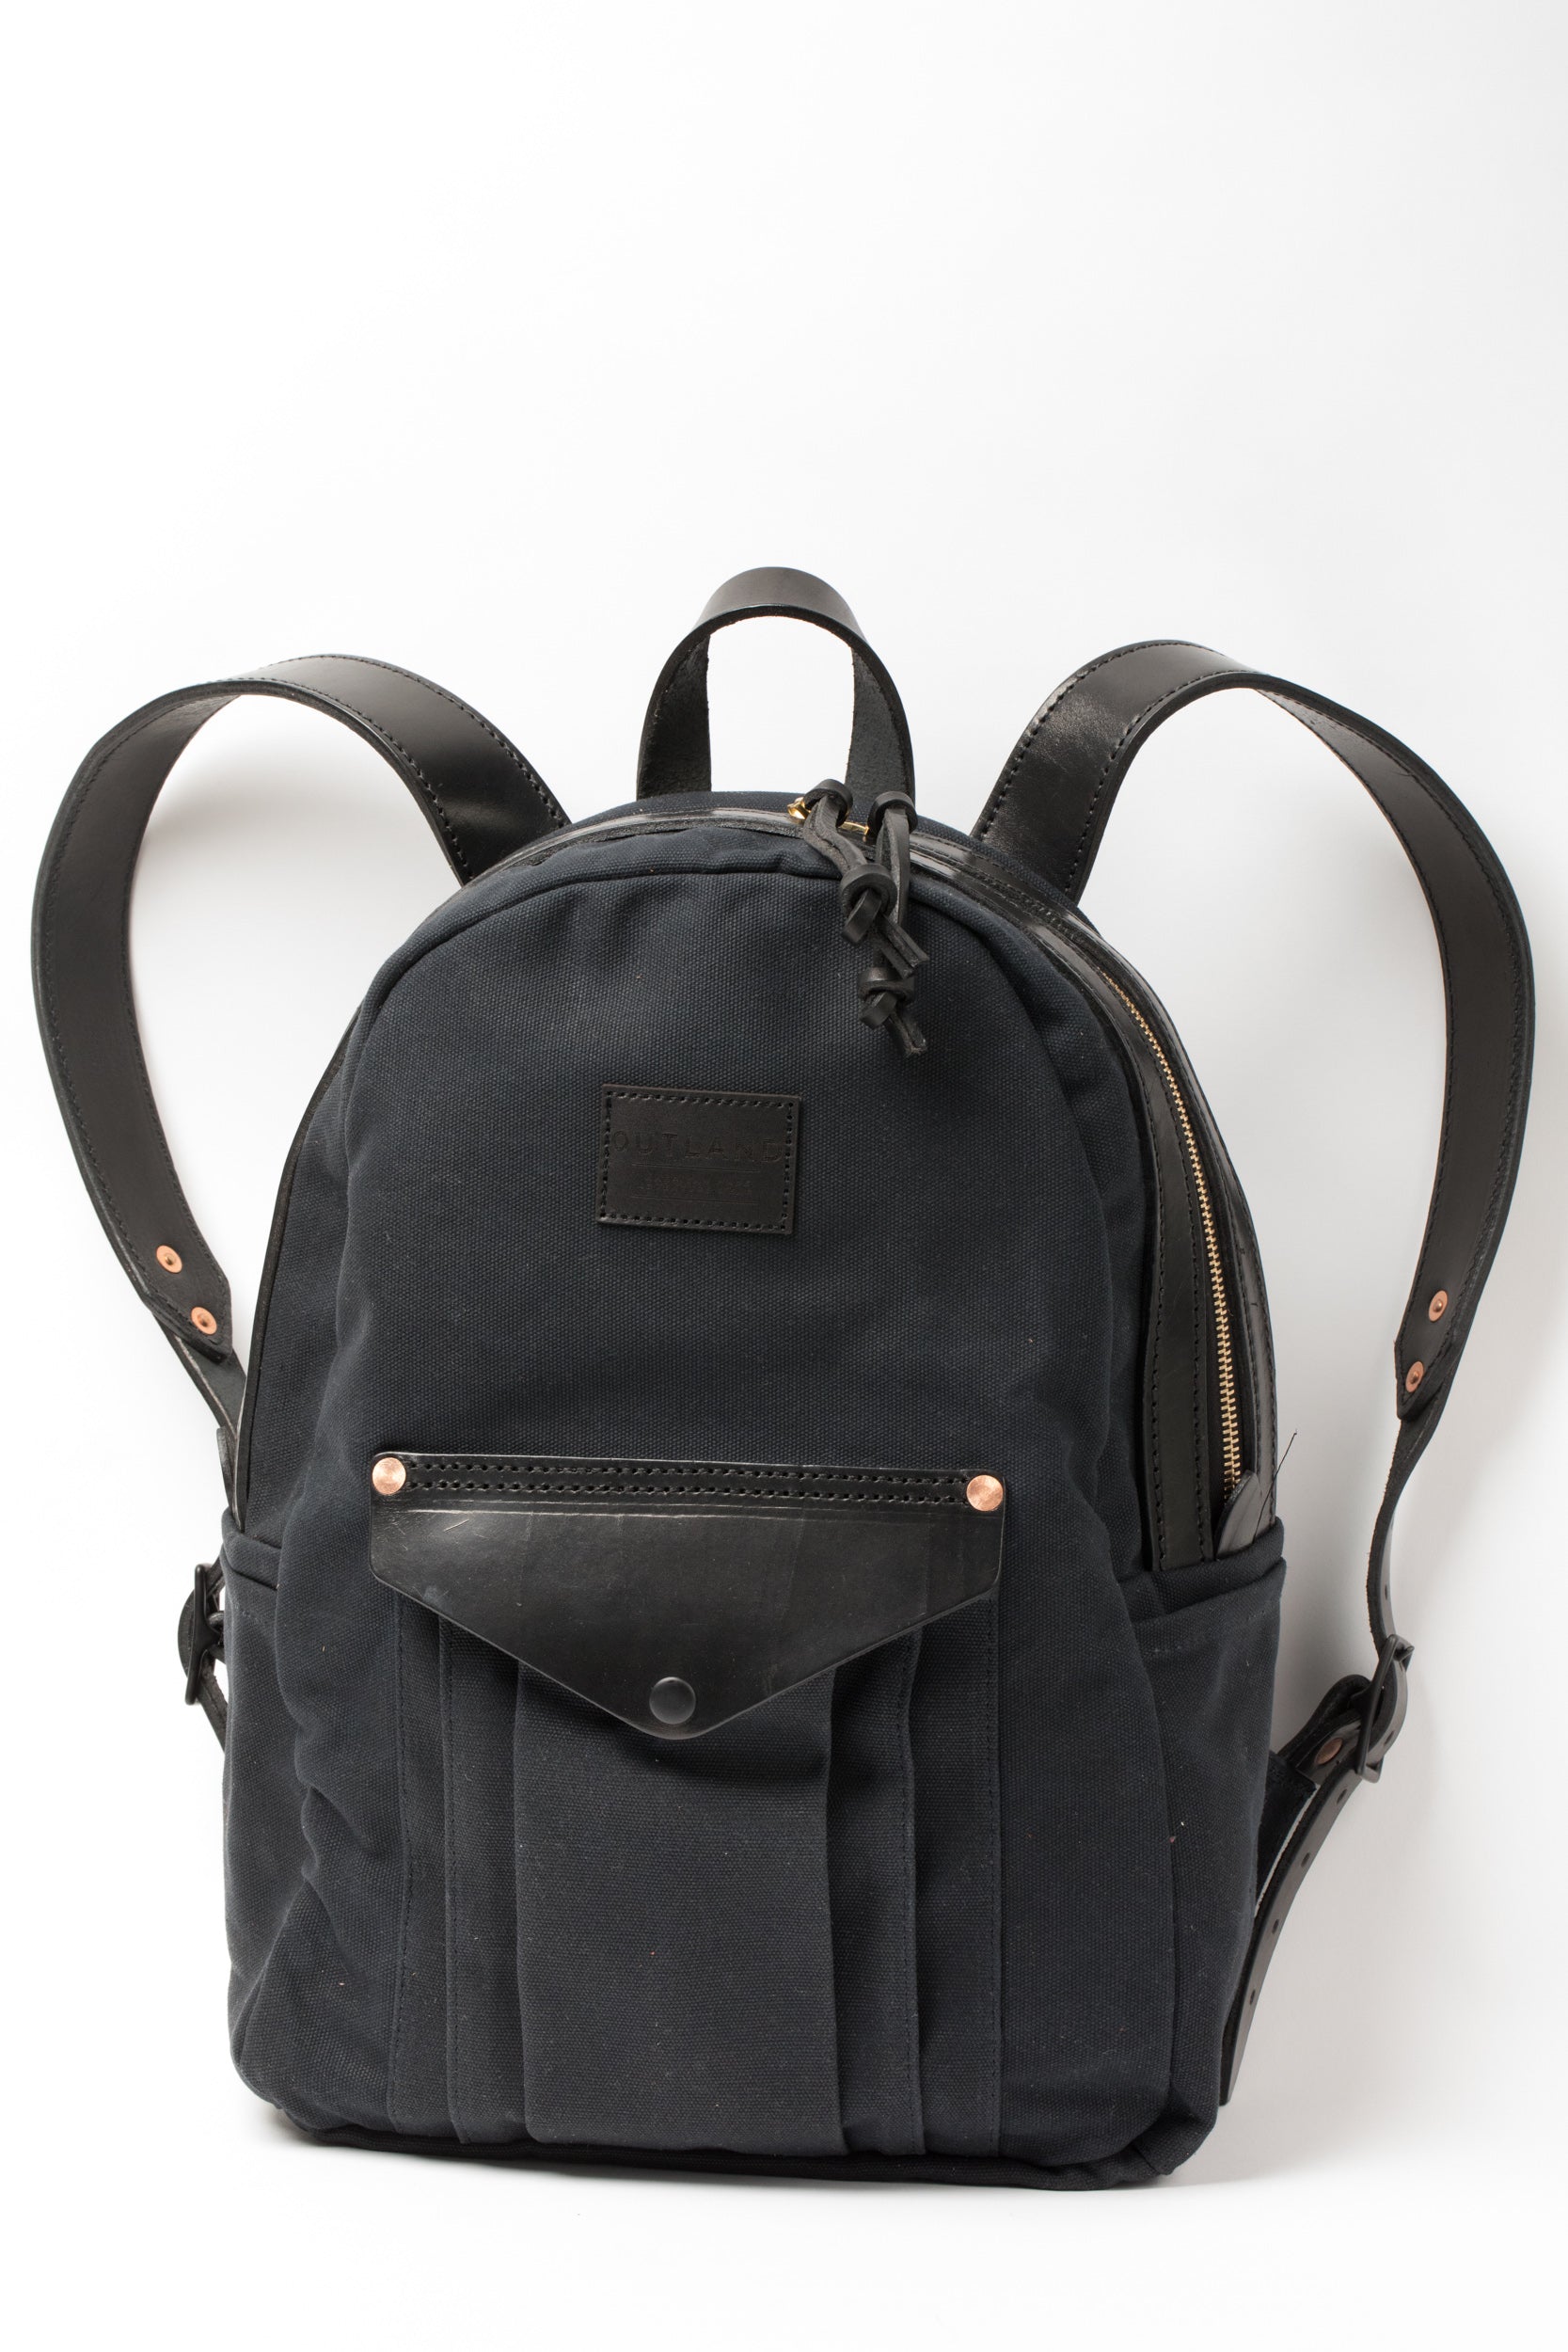 LAND Backpack // Black